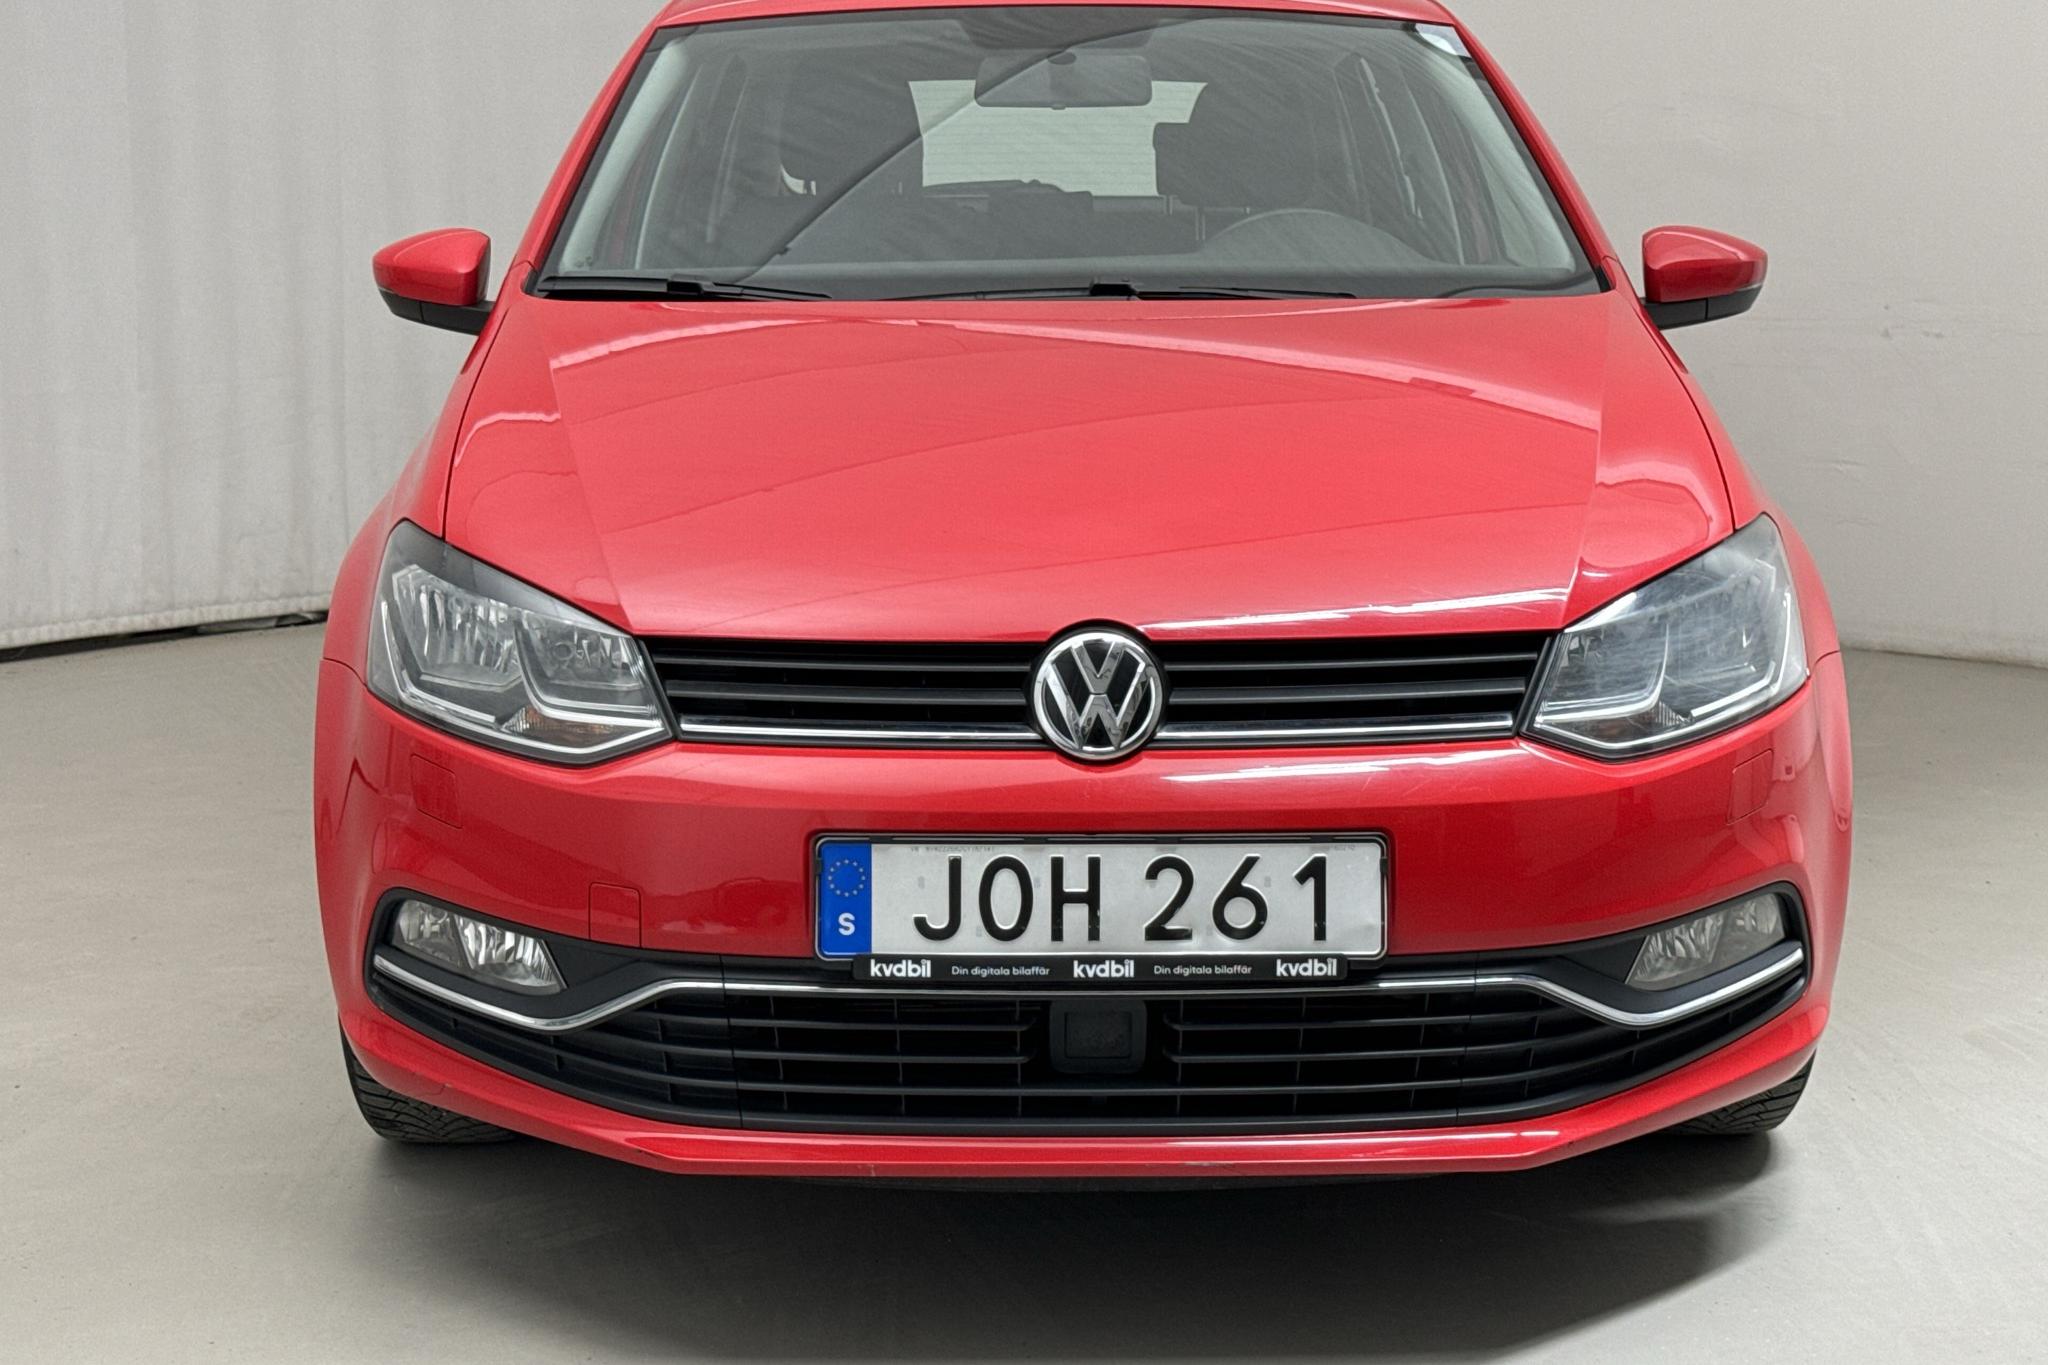 VW Polo 1.2 TSI 5dr (90hk) - 16 300 km - Manual - red - 2016